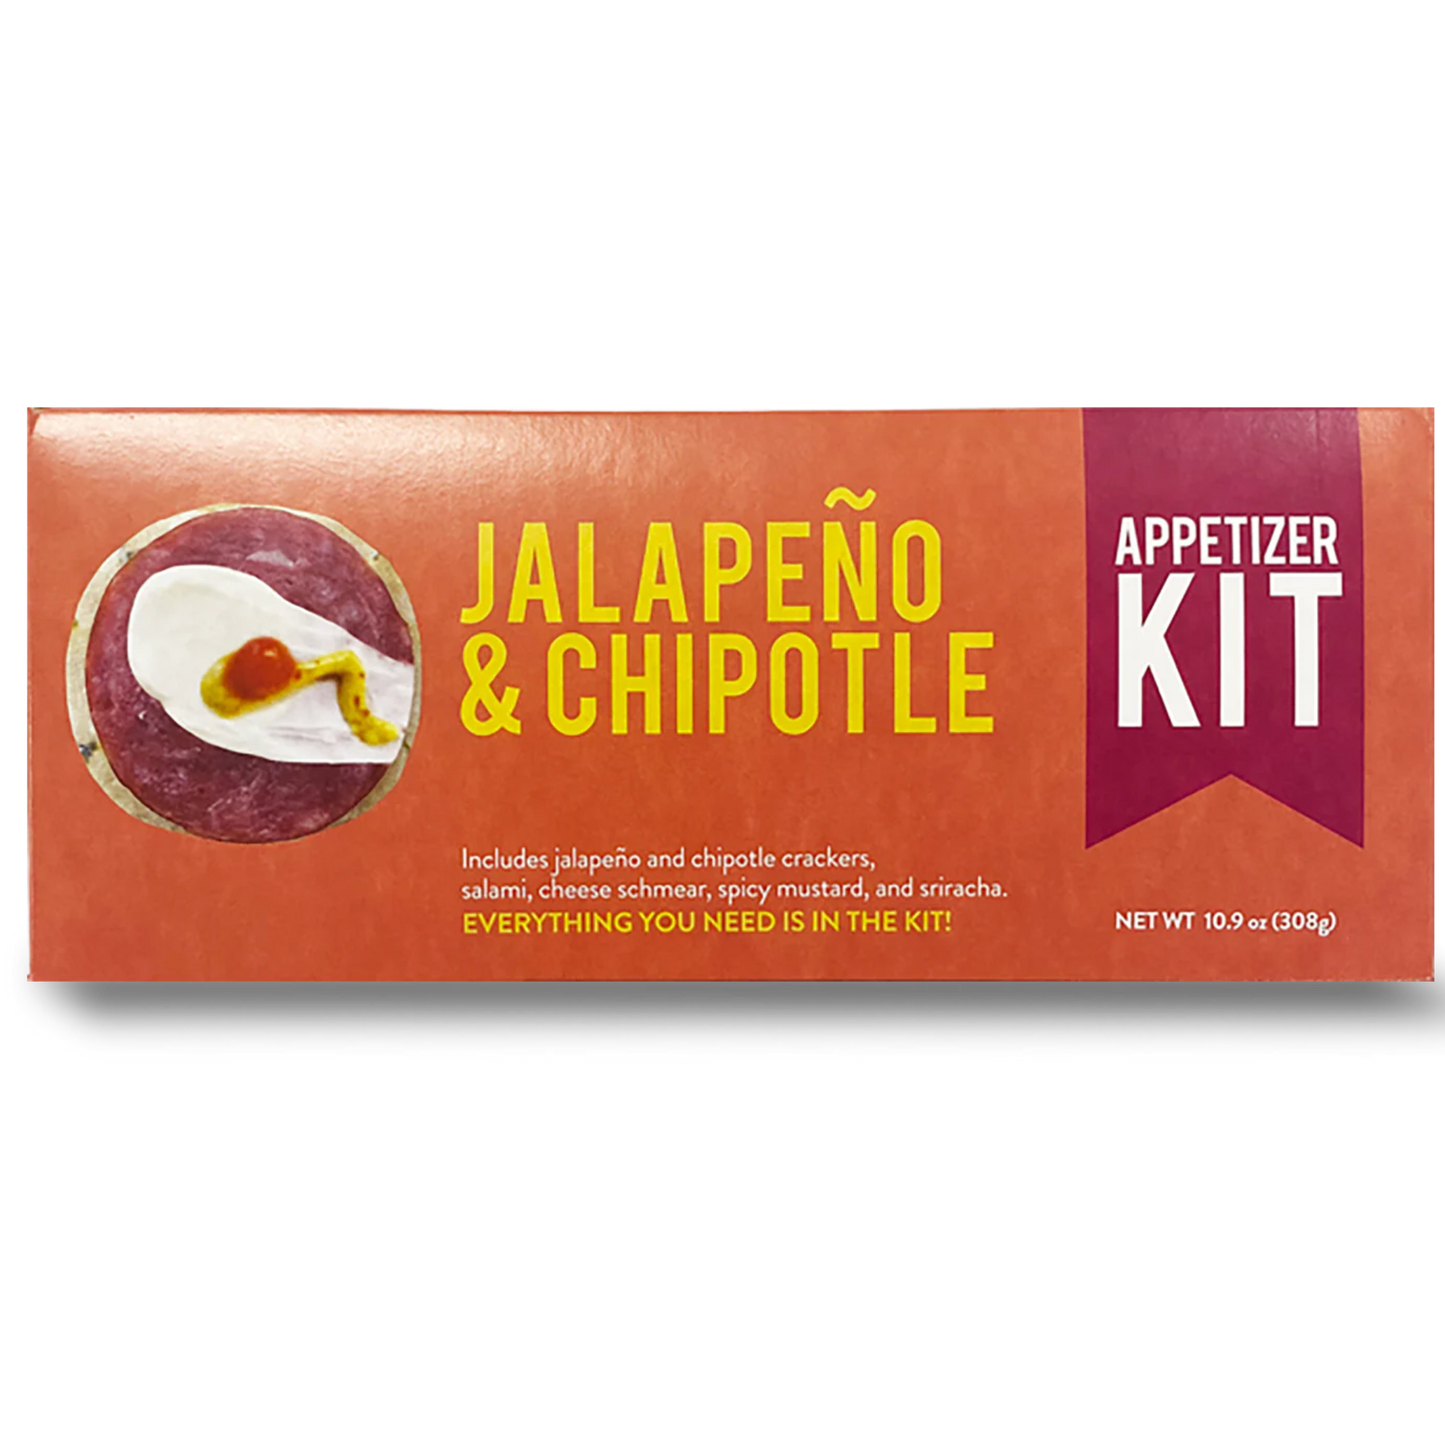 Jalapeño & Chipotle Appetizer Kit